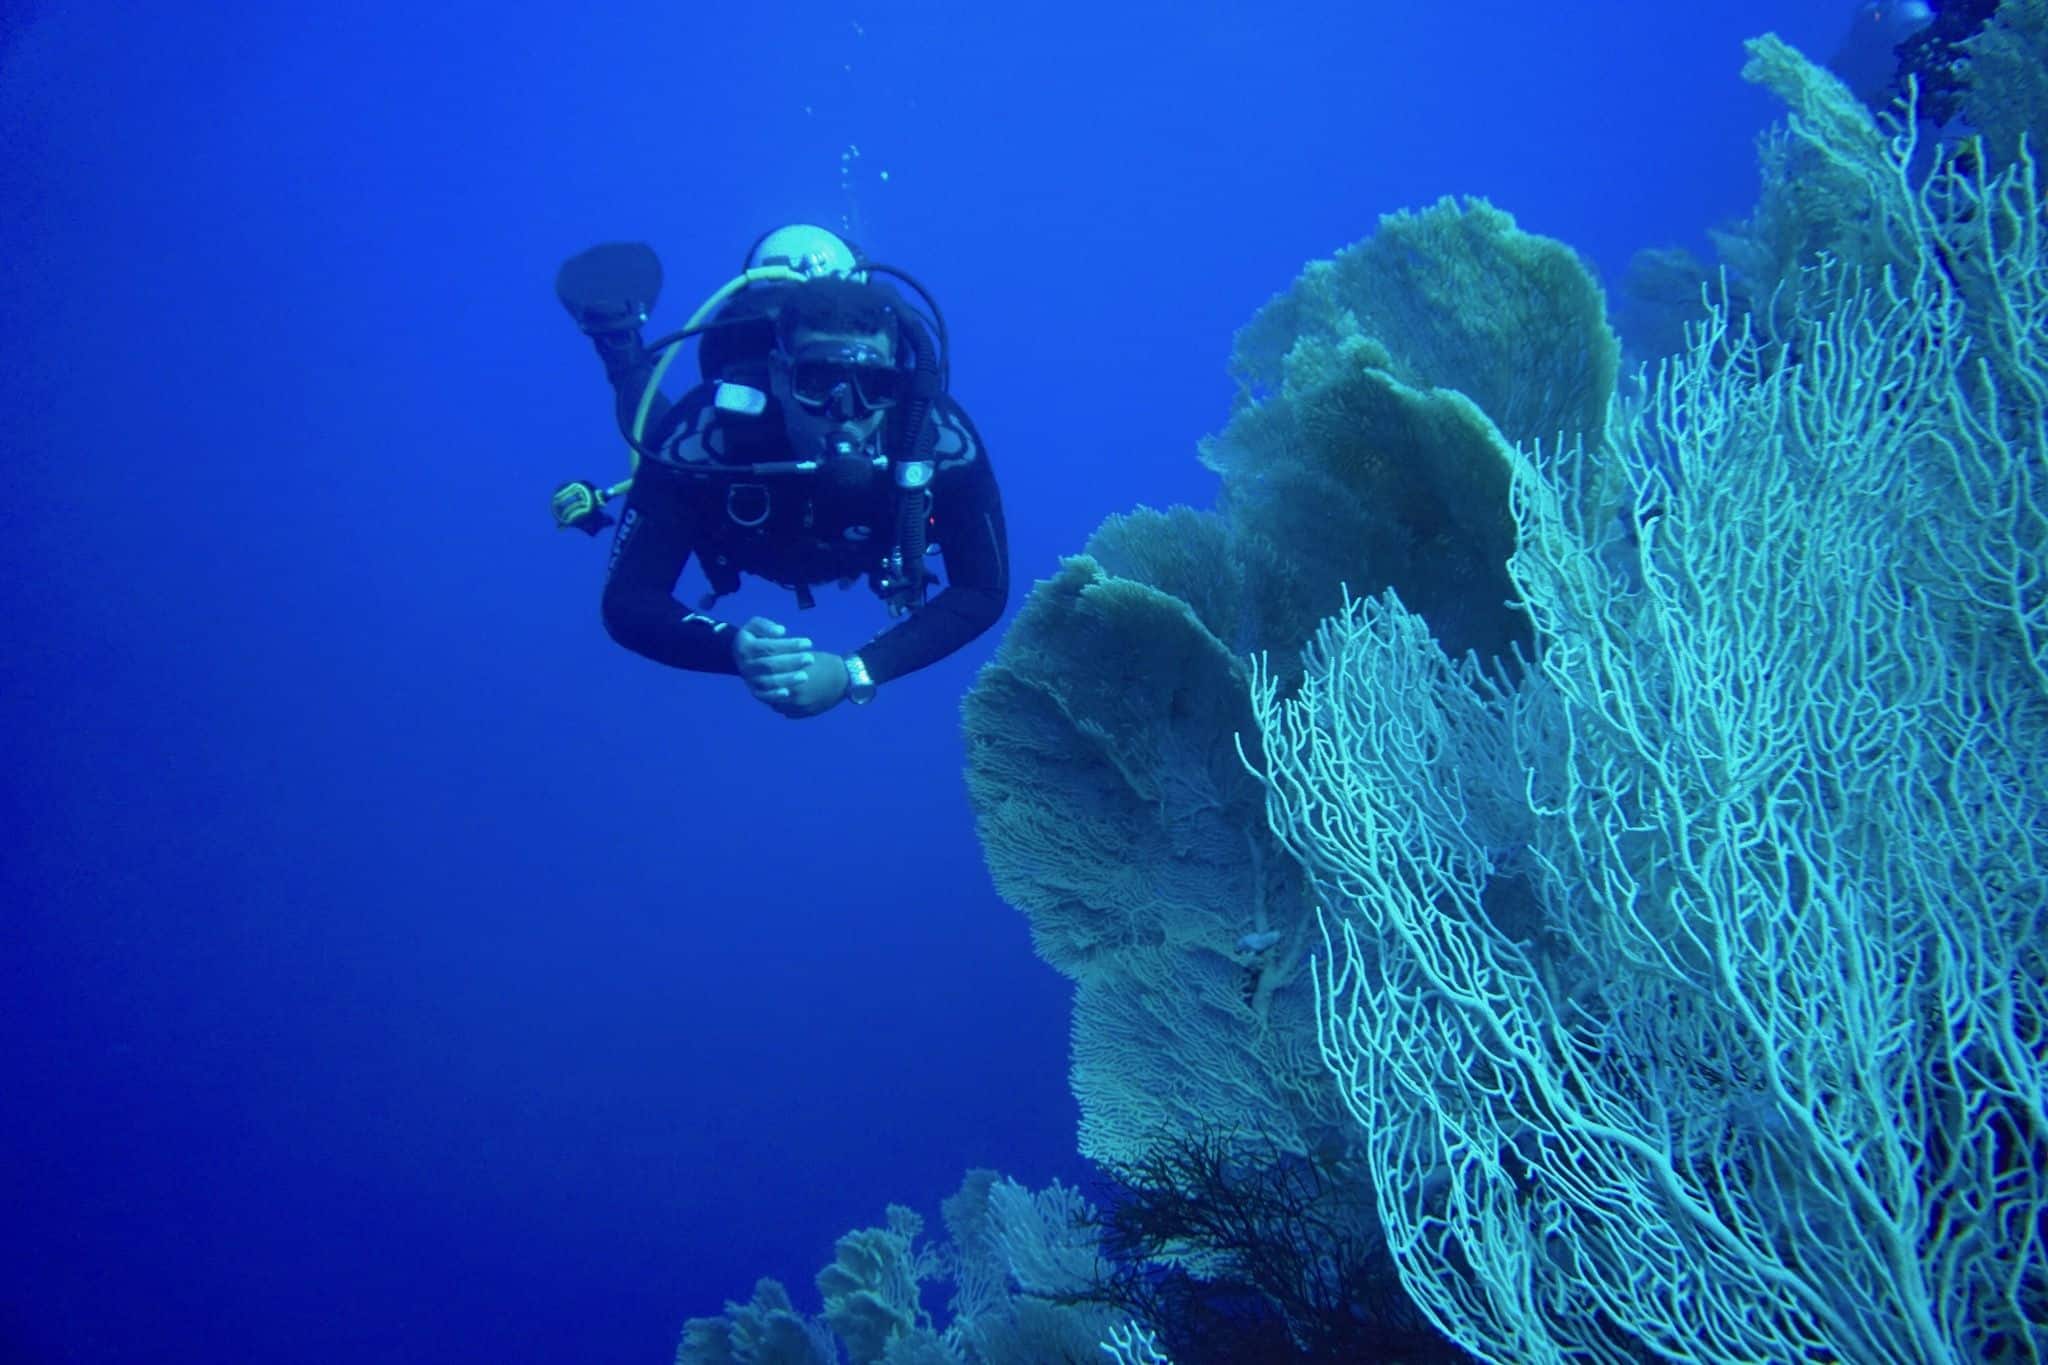 Mergulho de fascínio - você pode descobrir um mundo estranho abaixo da superfície do mar.